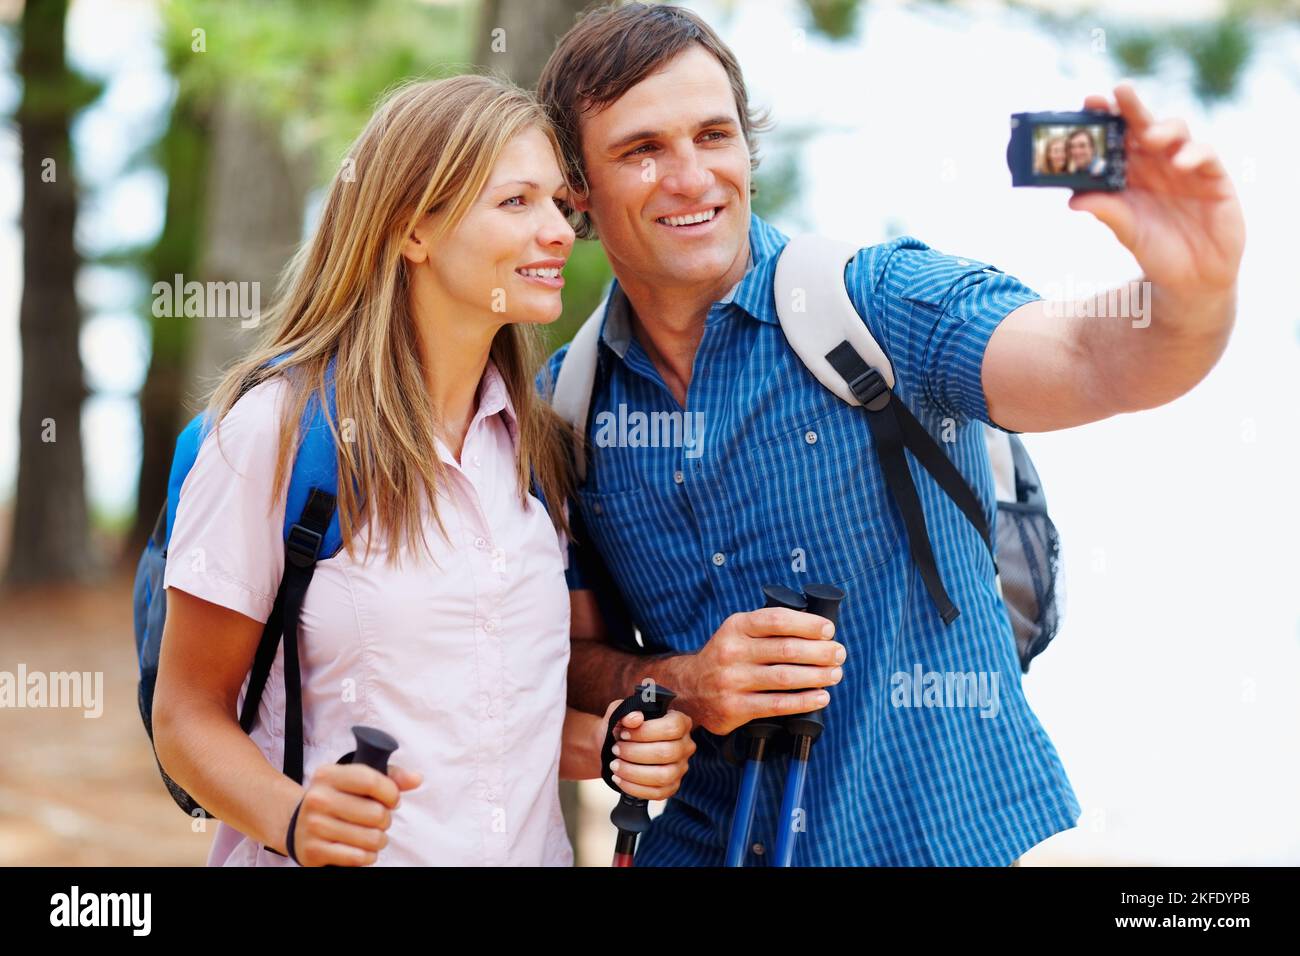 Paar fotografiert beim Wandern. Pärchen, die eine Pause vom Wandern machen und ein Foto von sich selbst machen. Stockfoto